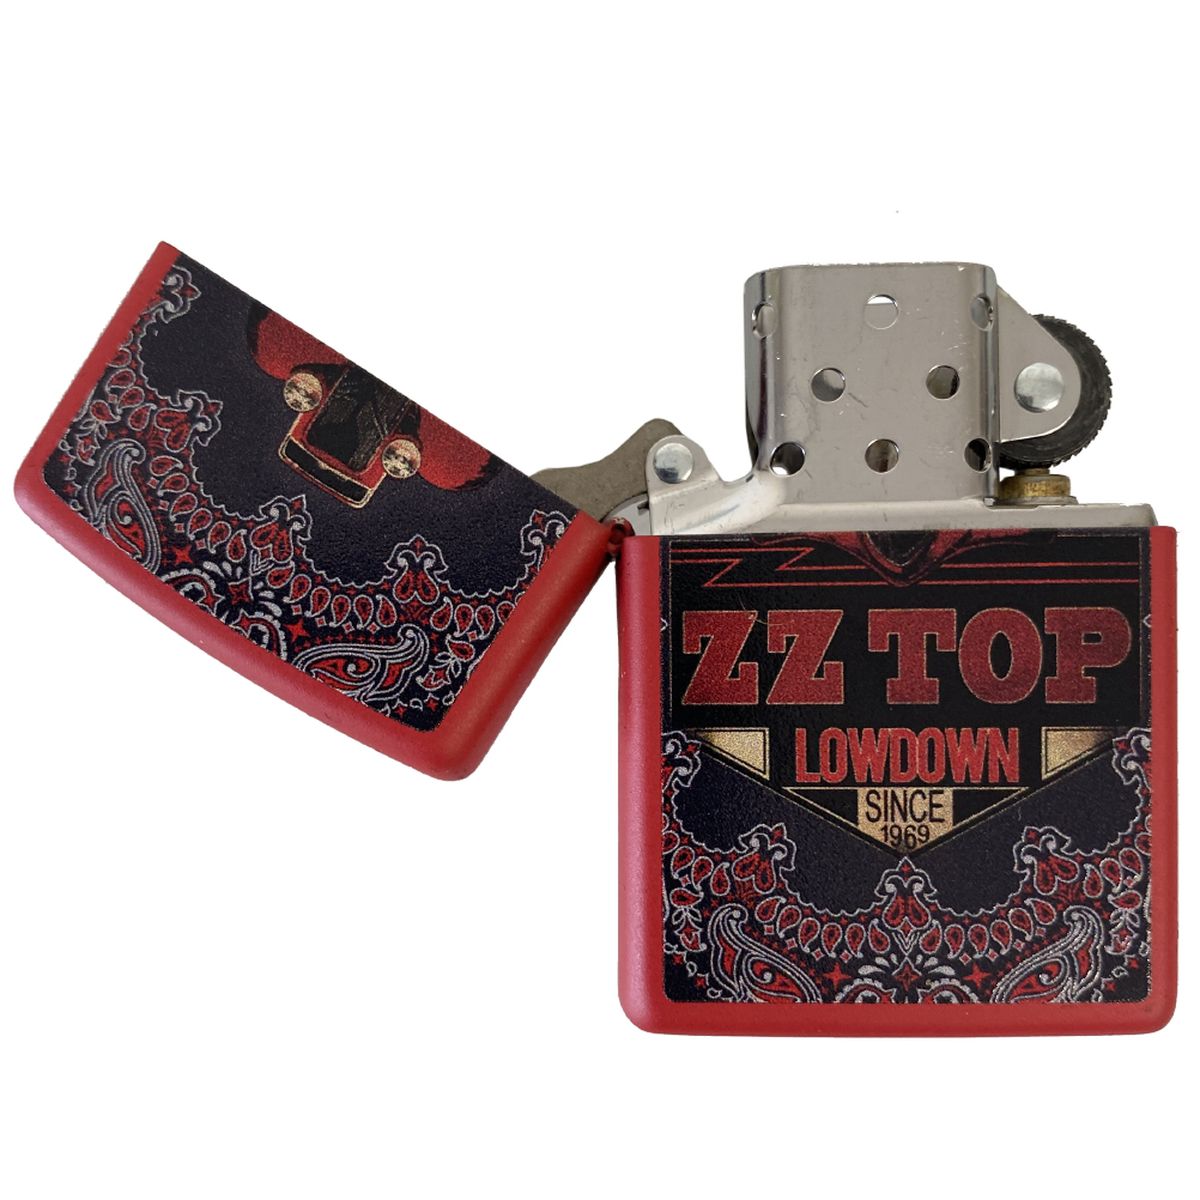 Zippo ZZ TOP Lowdown